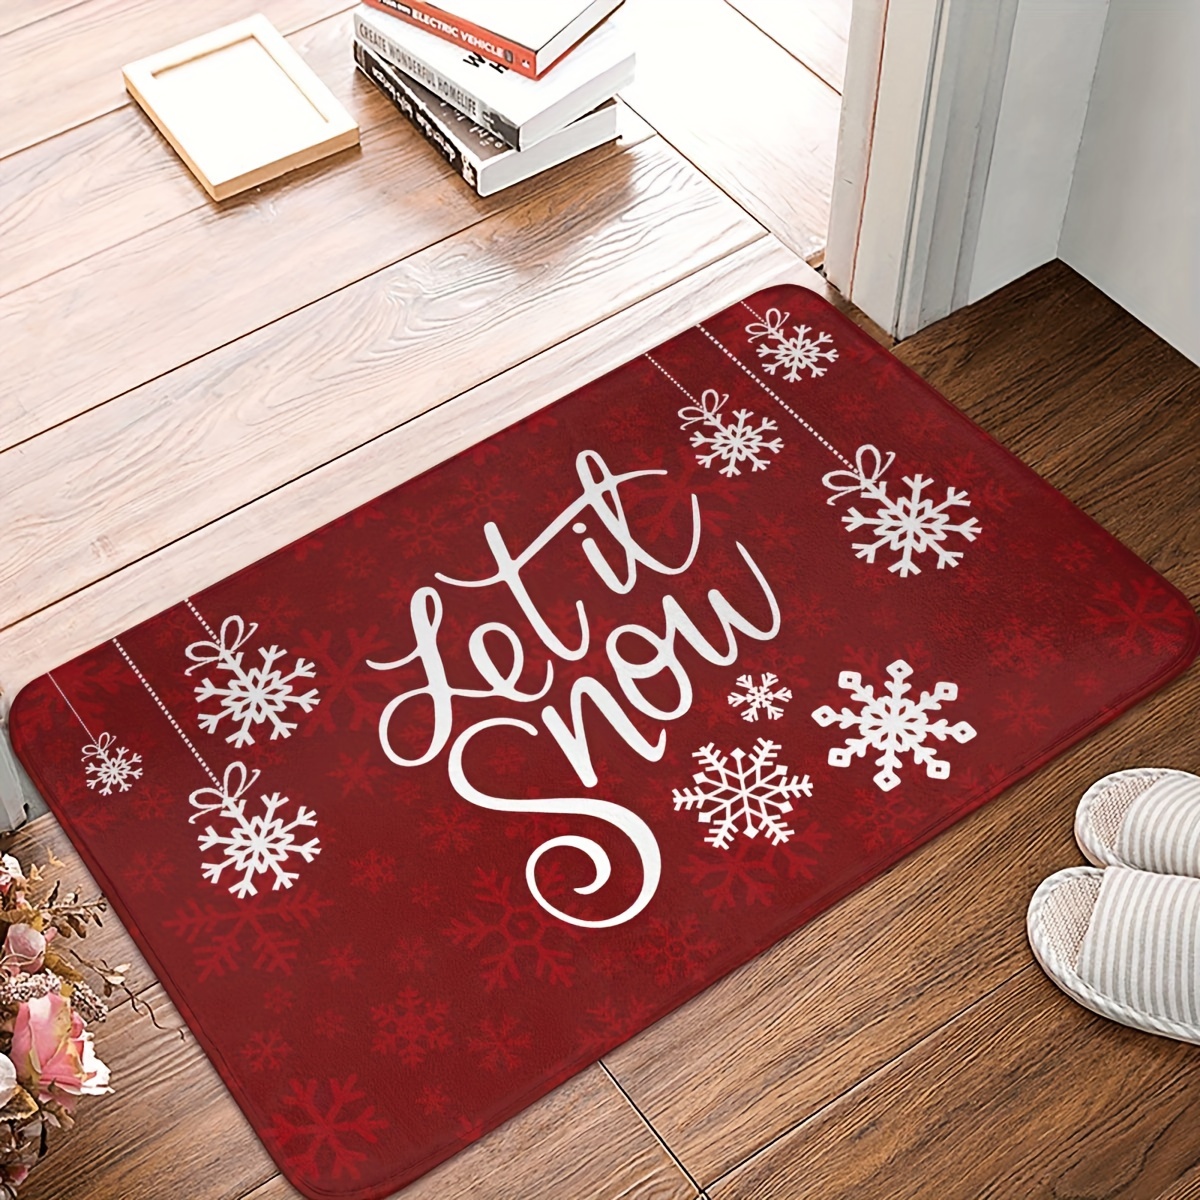 Let It Snow - Entryway Floor Mat